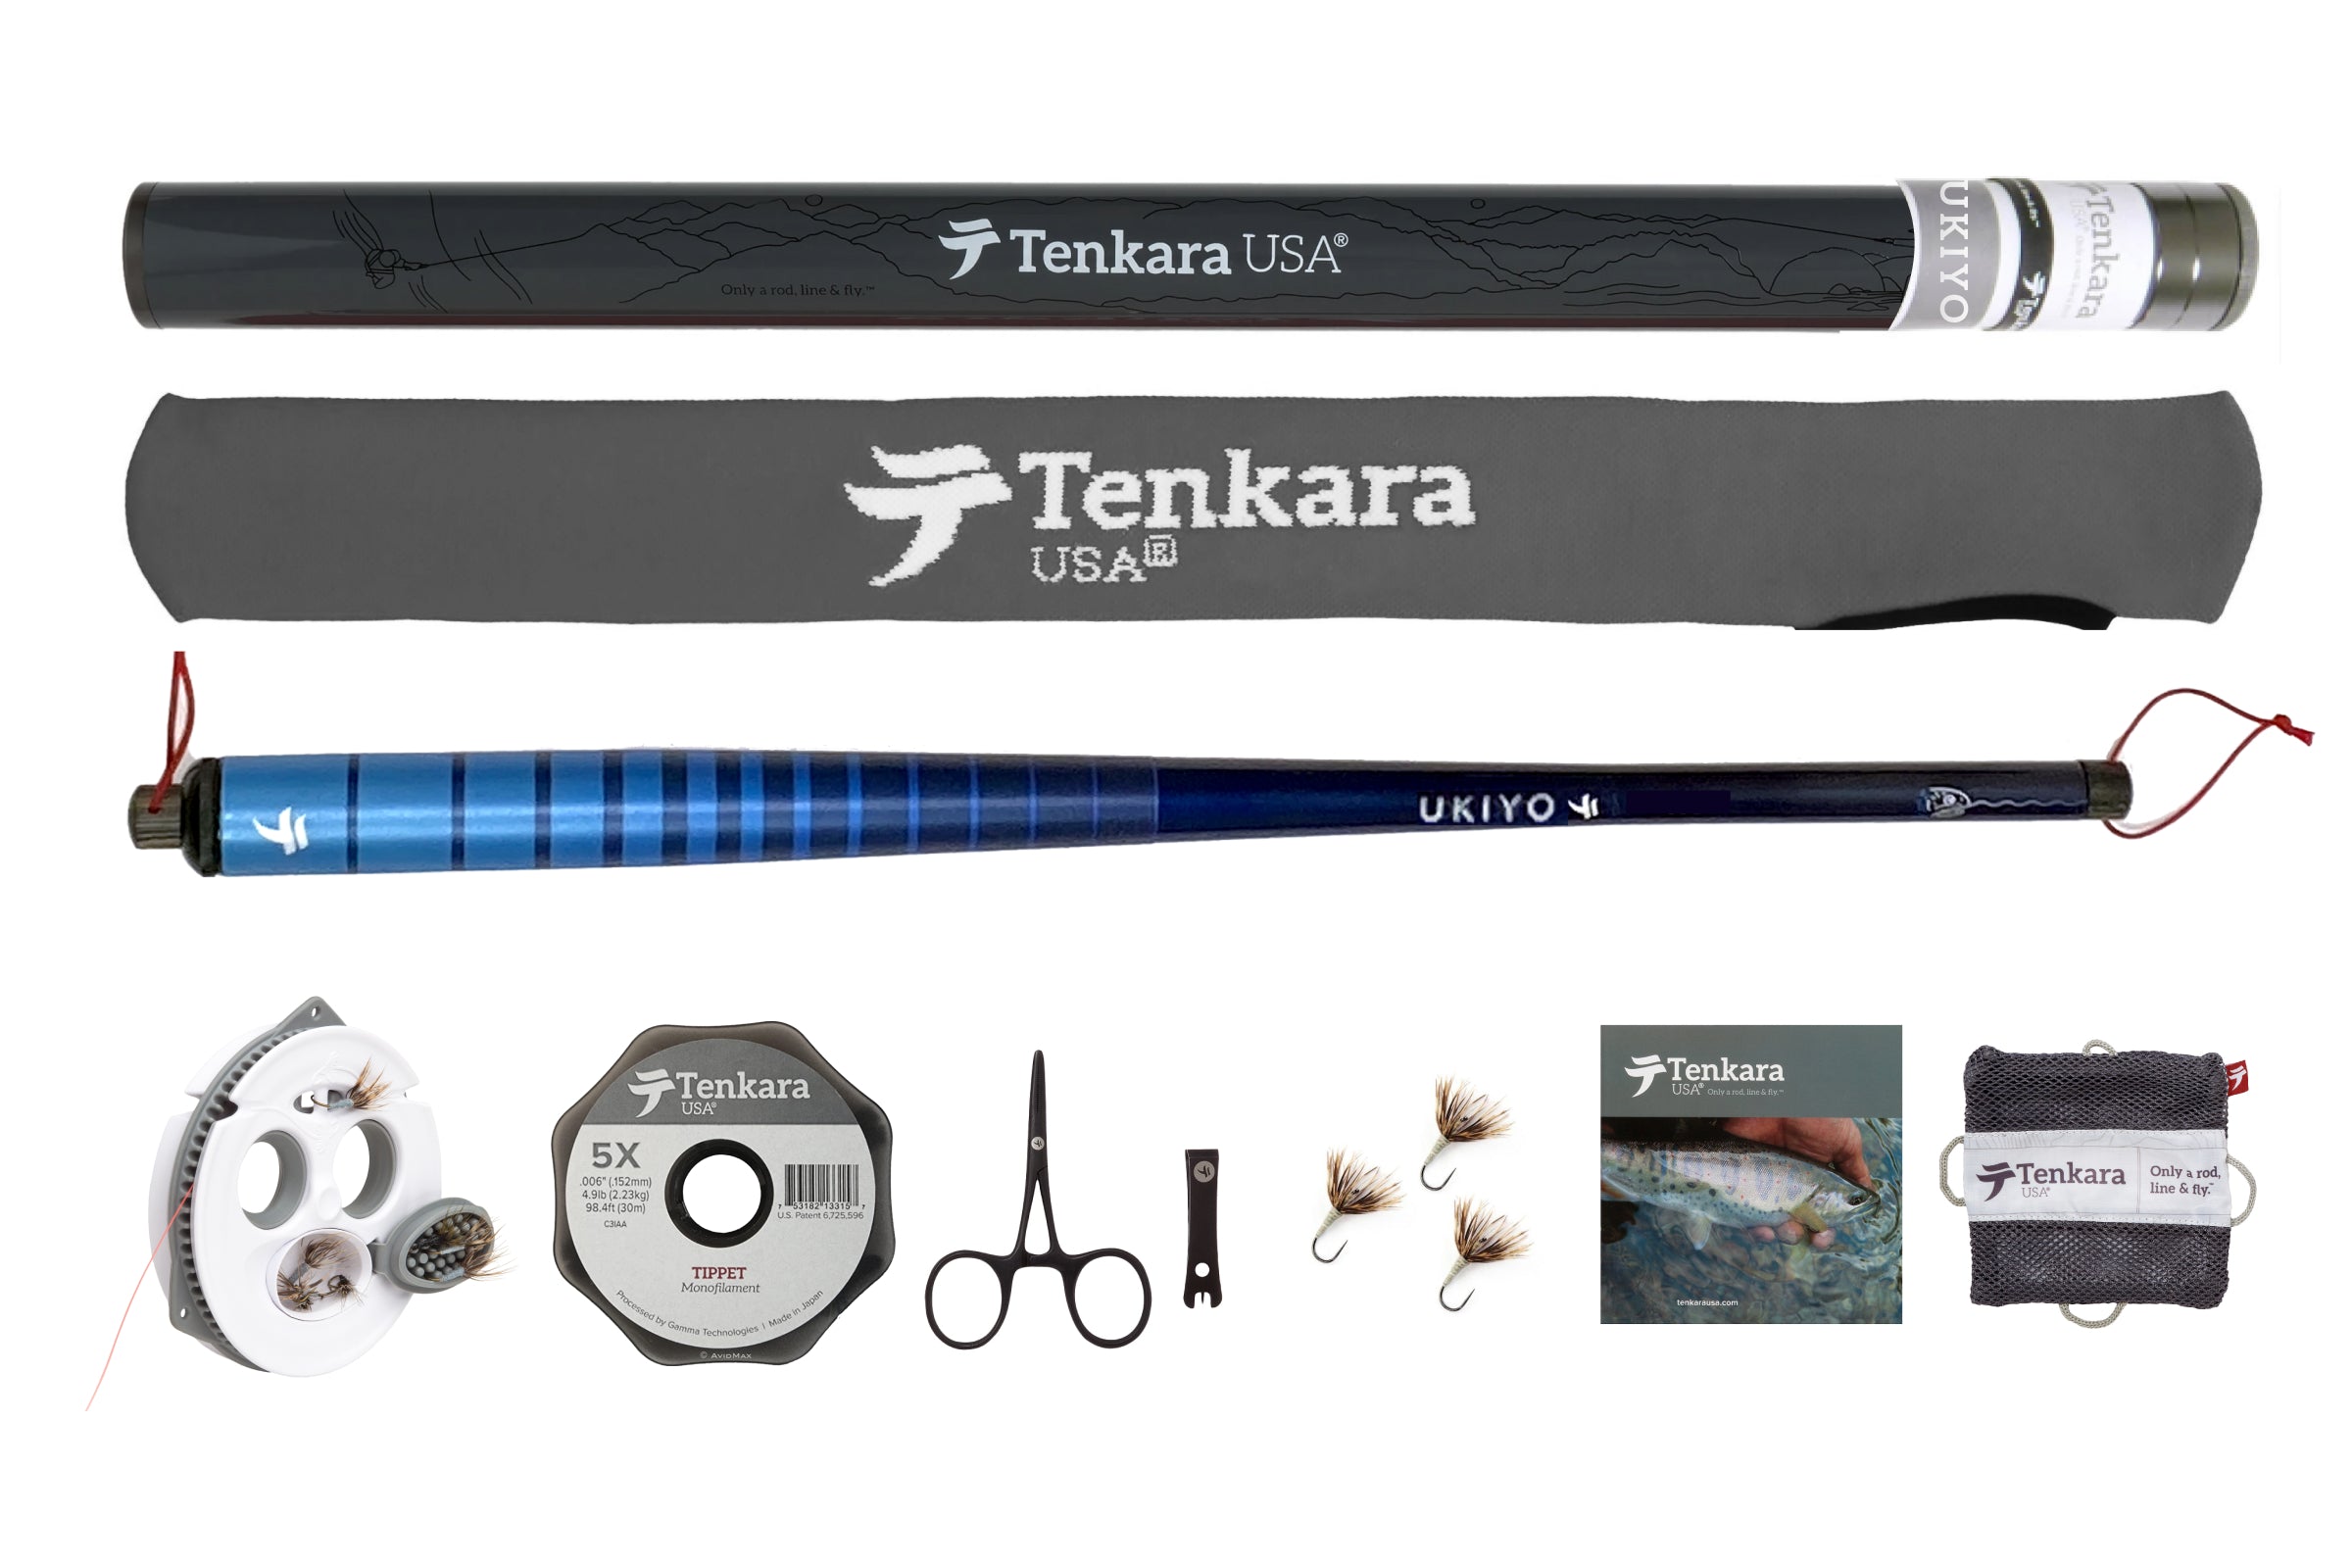 Tenkara USA Complete Set UKIYO Rod Kit.